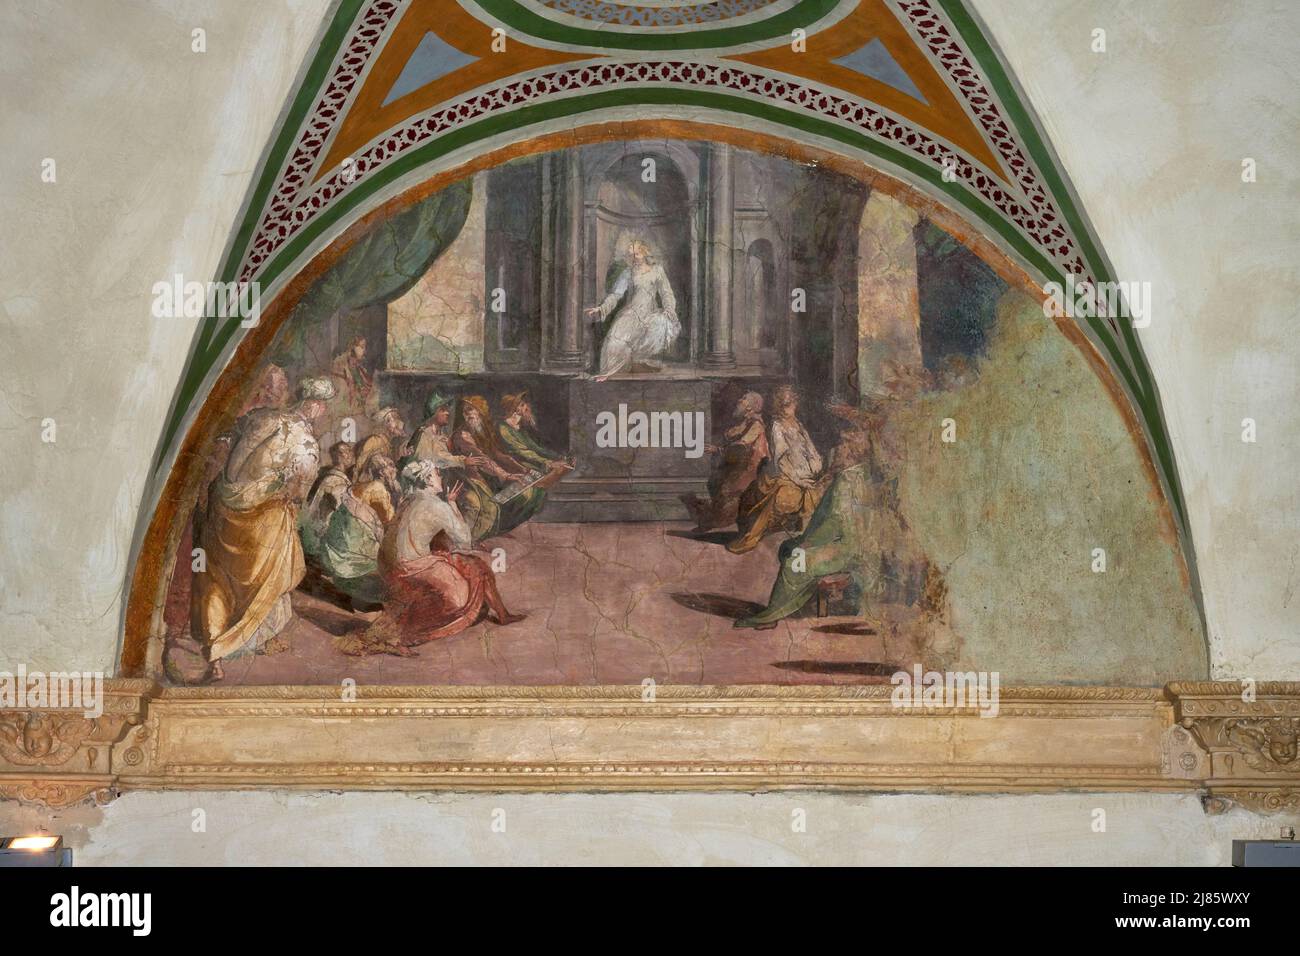 Gesù tra i dottori - afresco - Alessandro,Cherubino e Giovanni Alberti - 1588 - Sansepolcro (Ar), Italia, Oratorio della Misericordia Foto de stock